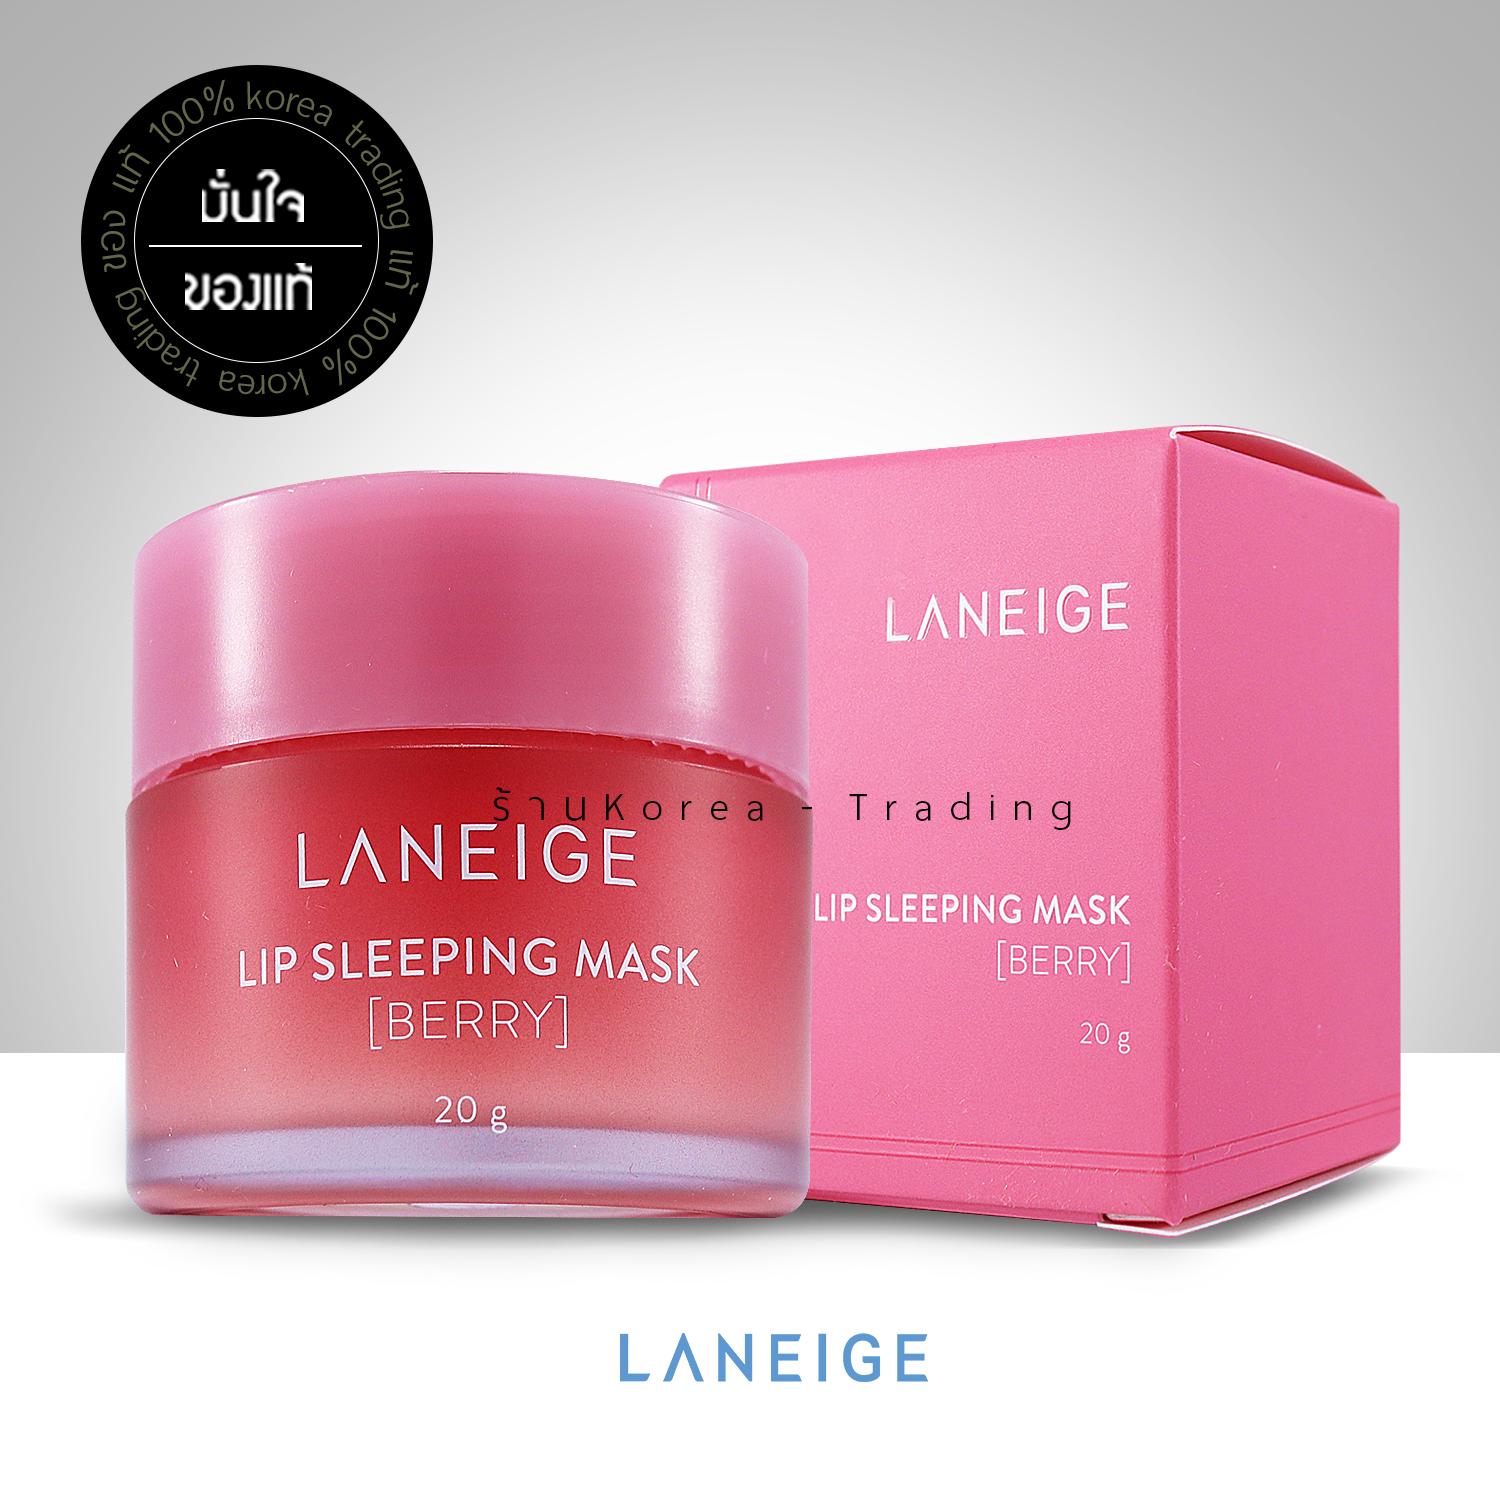 (ขนาดจริง/ของแท้) Laneige Lip Sleeping Mask [ Berry ] 20g ลาเนจลิปมาส์กปากอันดับ 1 ลิปชมพู Korea Trading